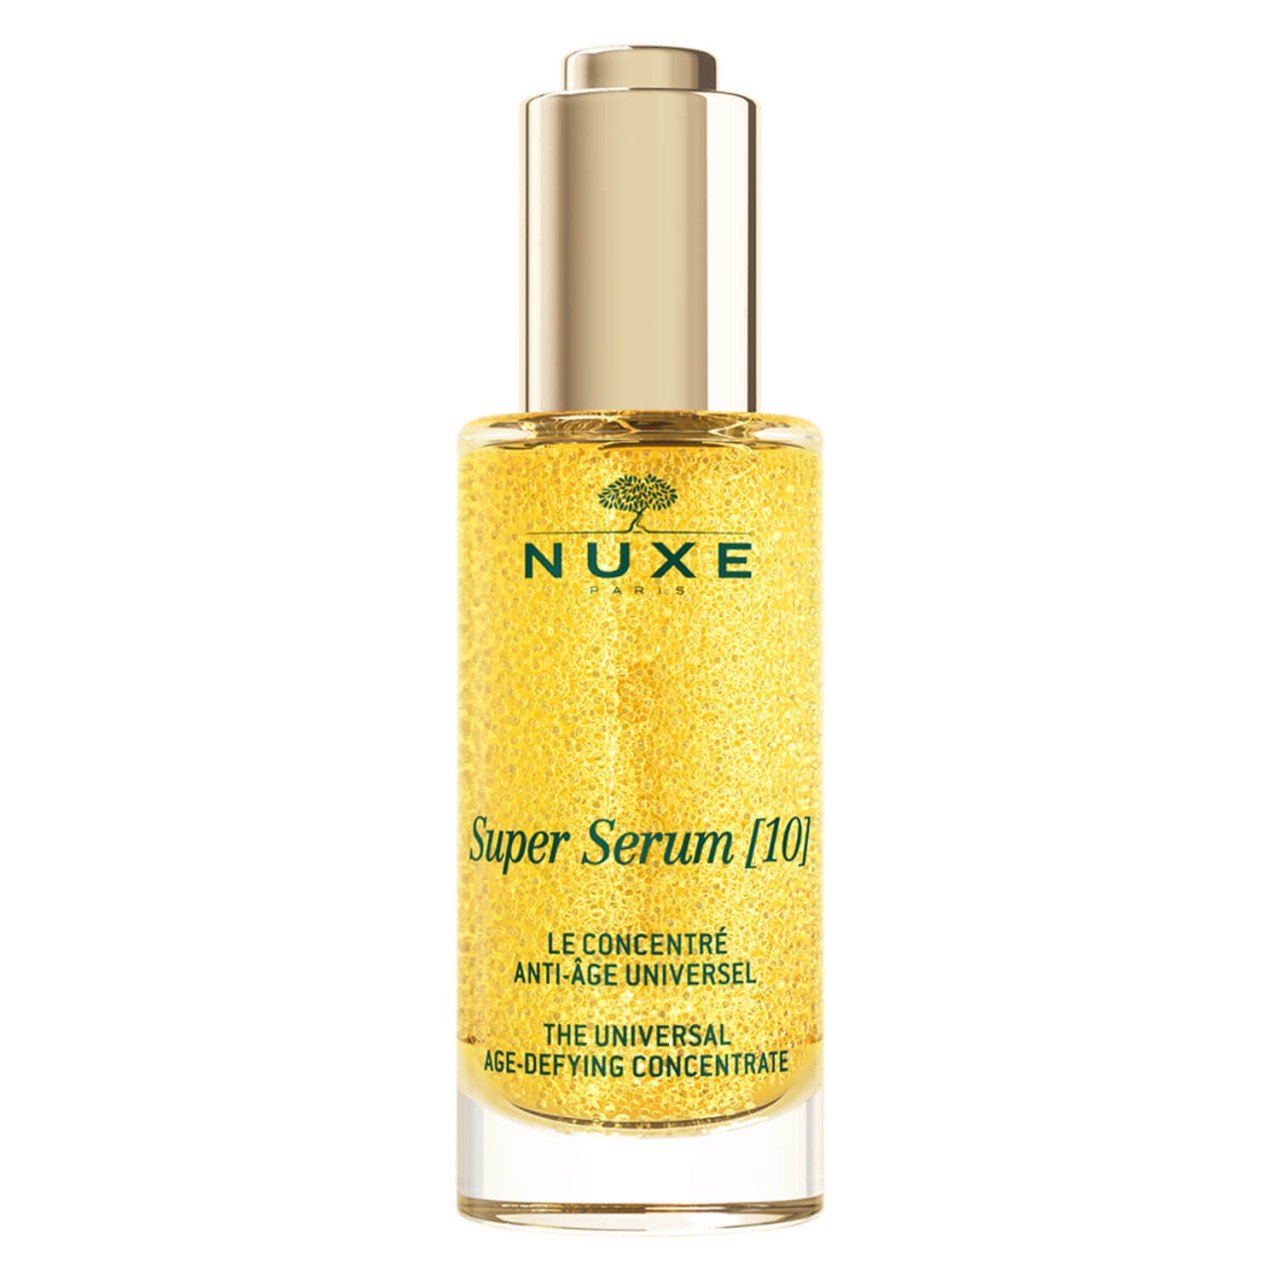 Nuxe Face - Super Serum [10] von Nuxe